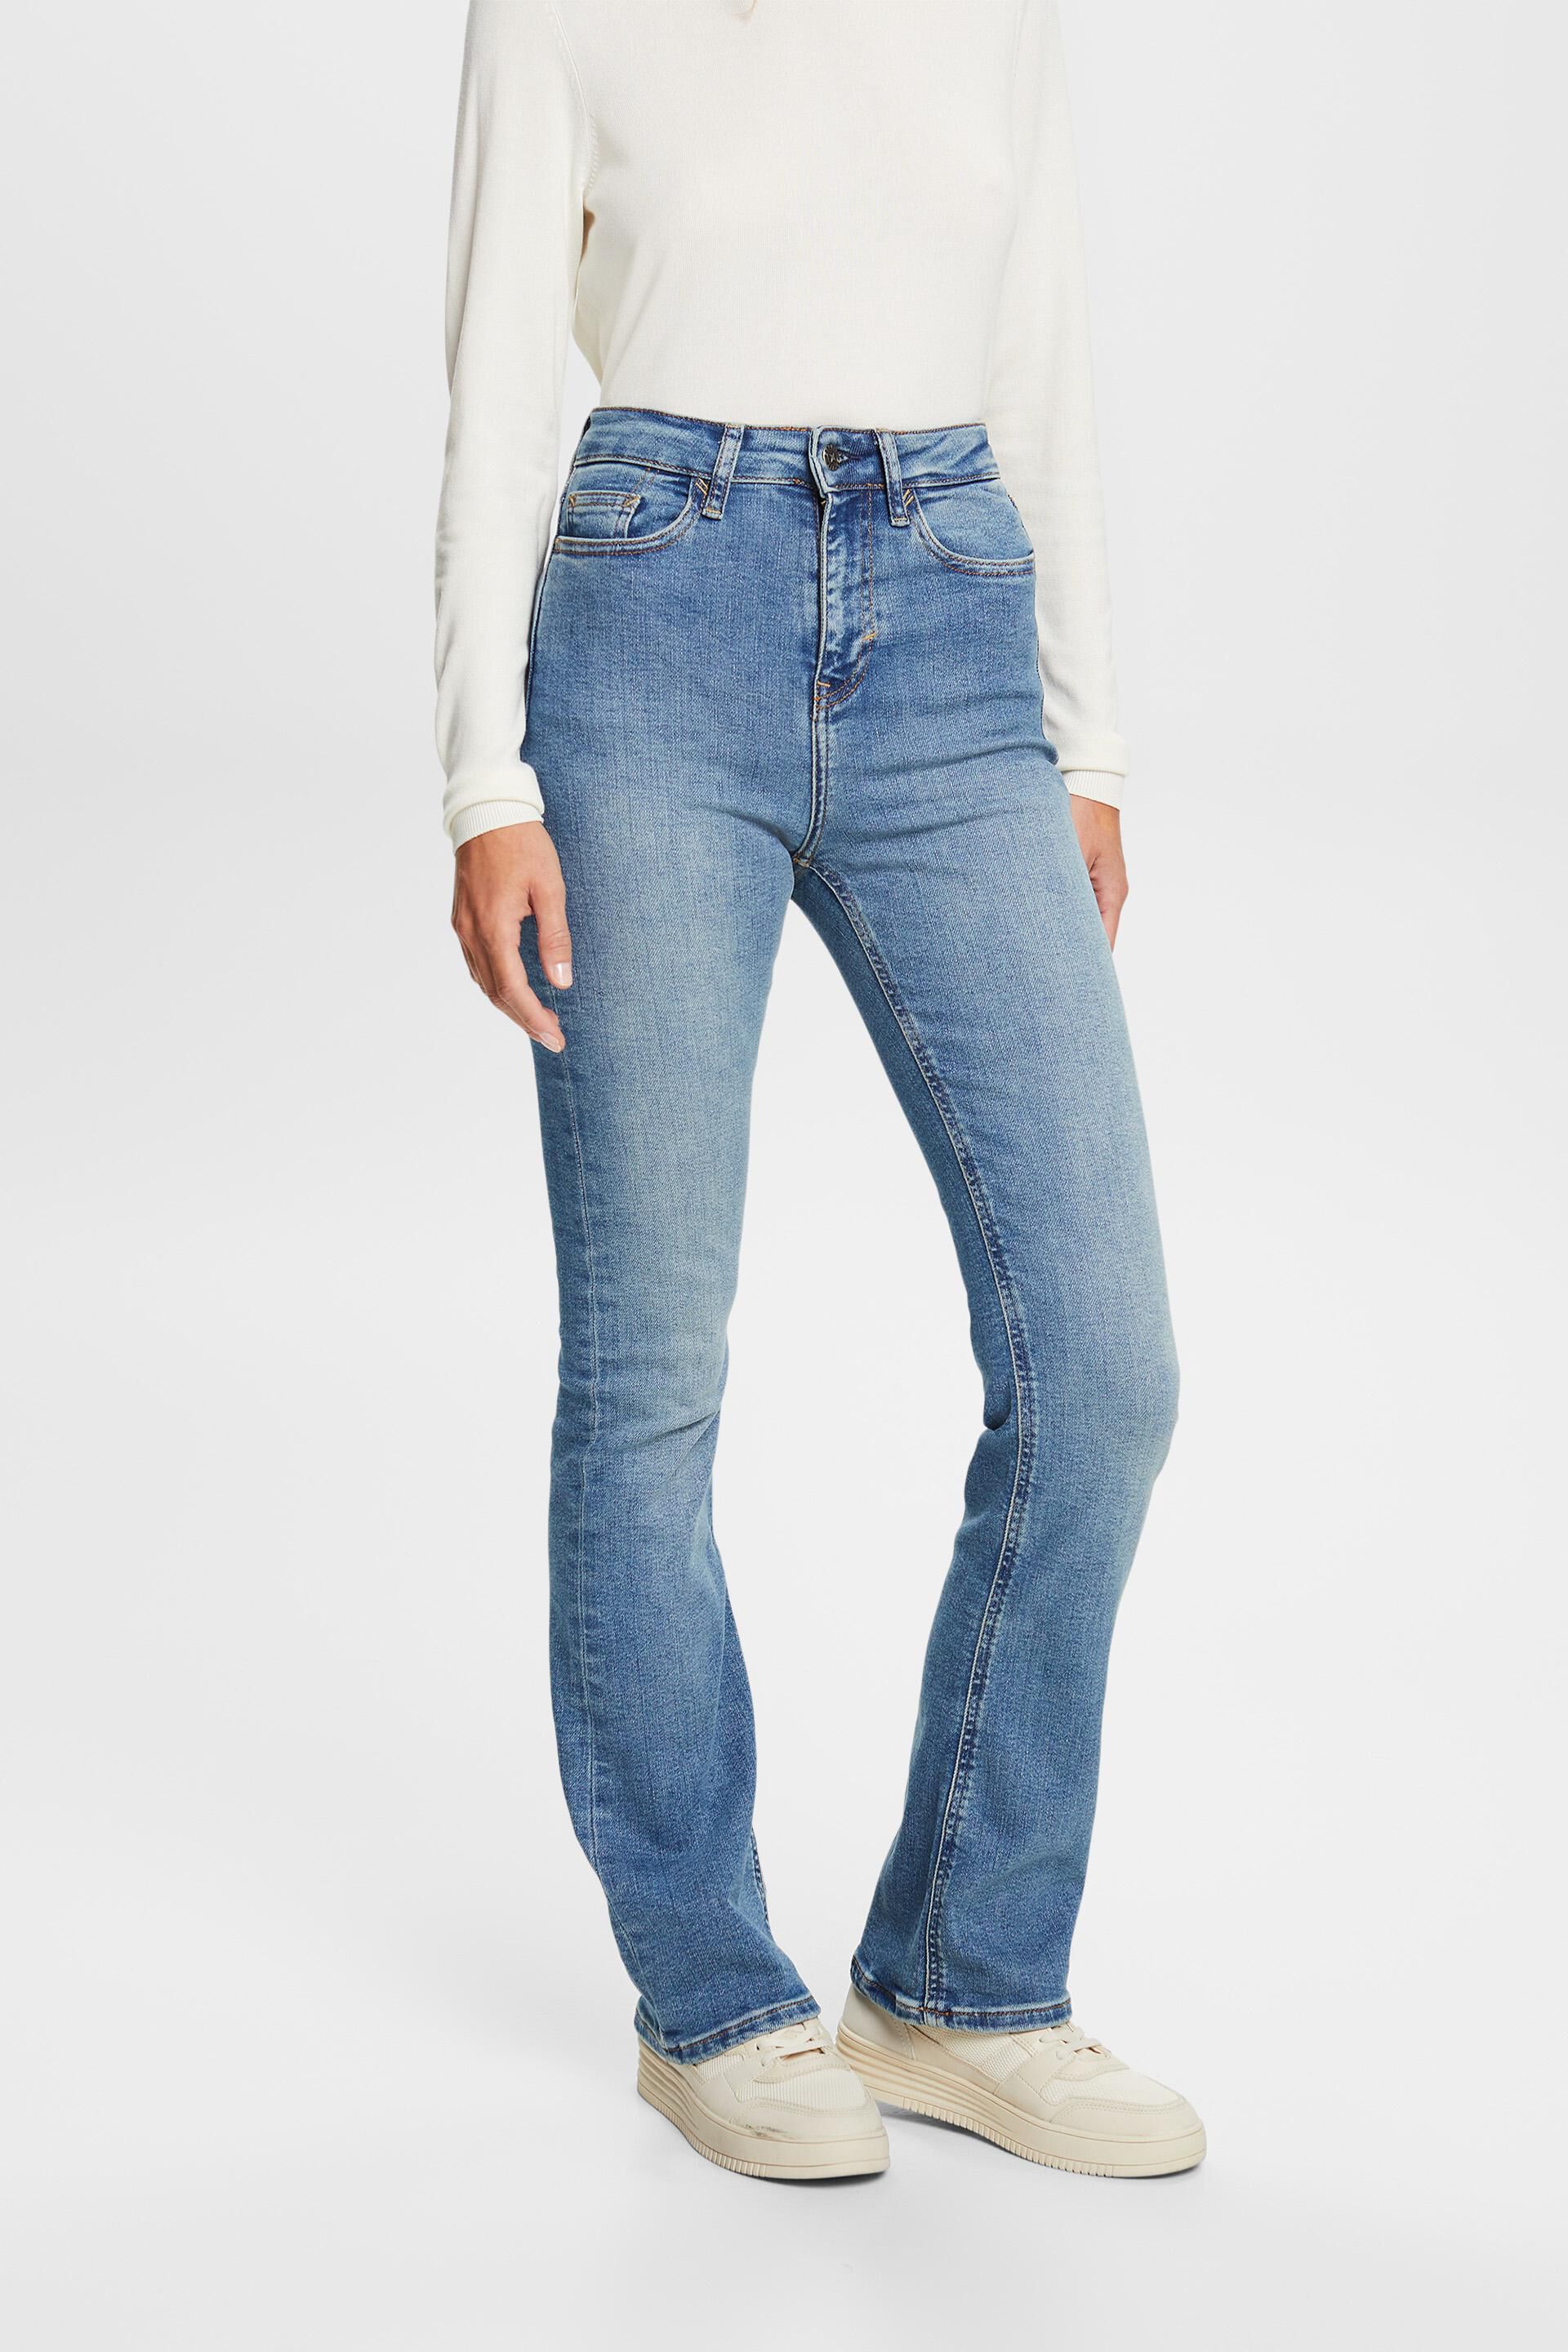 Esprit jeans bootcut stretch High-rise